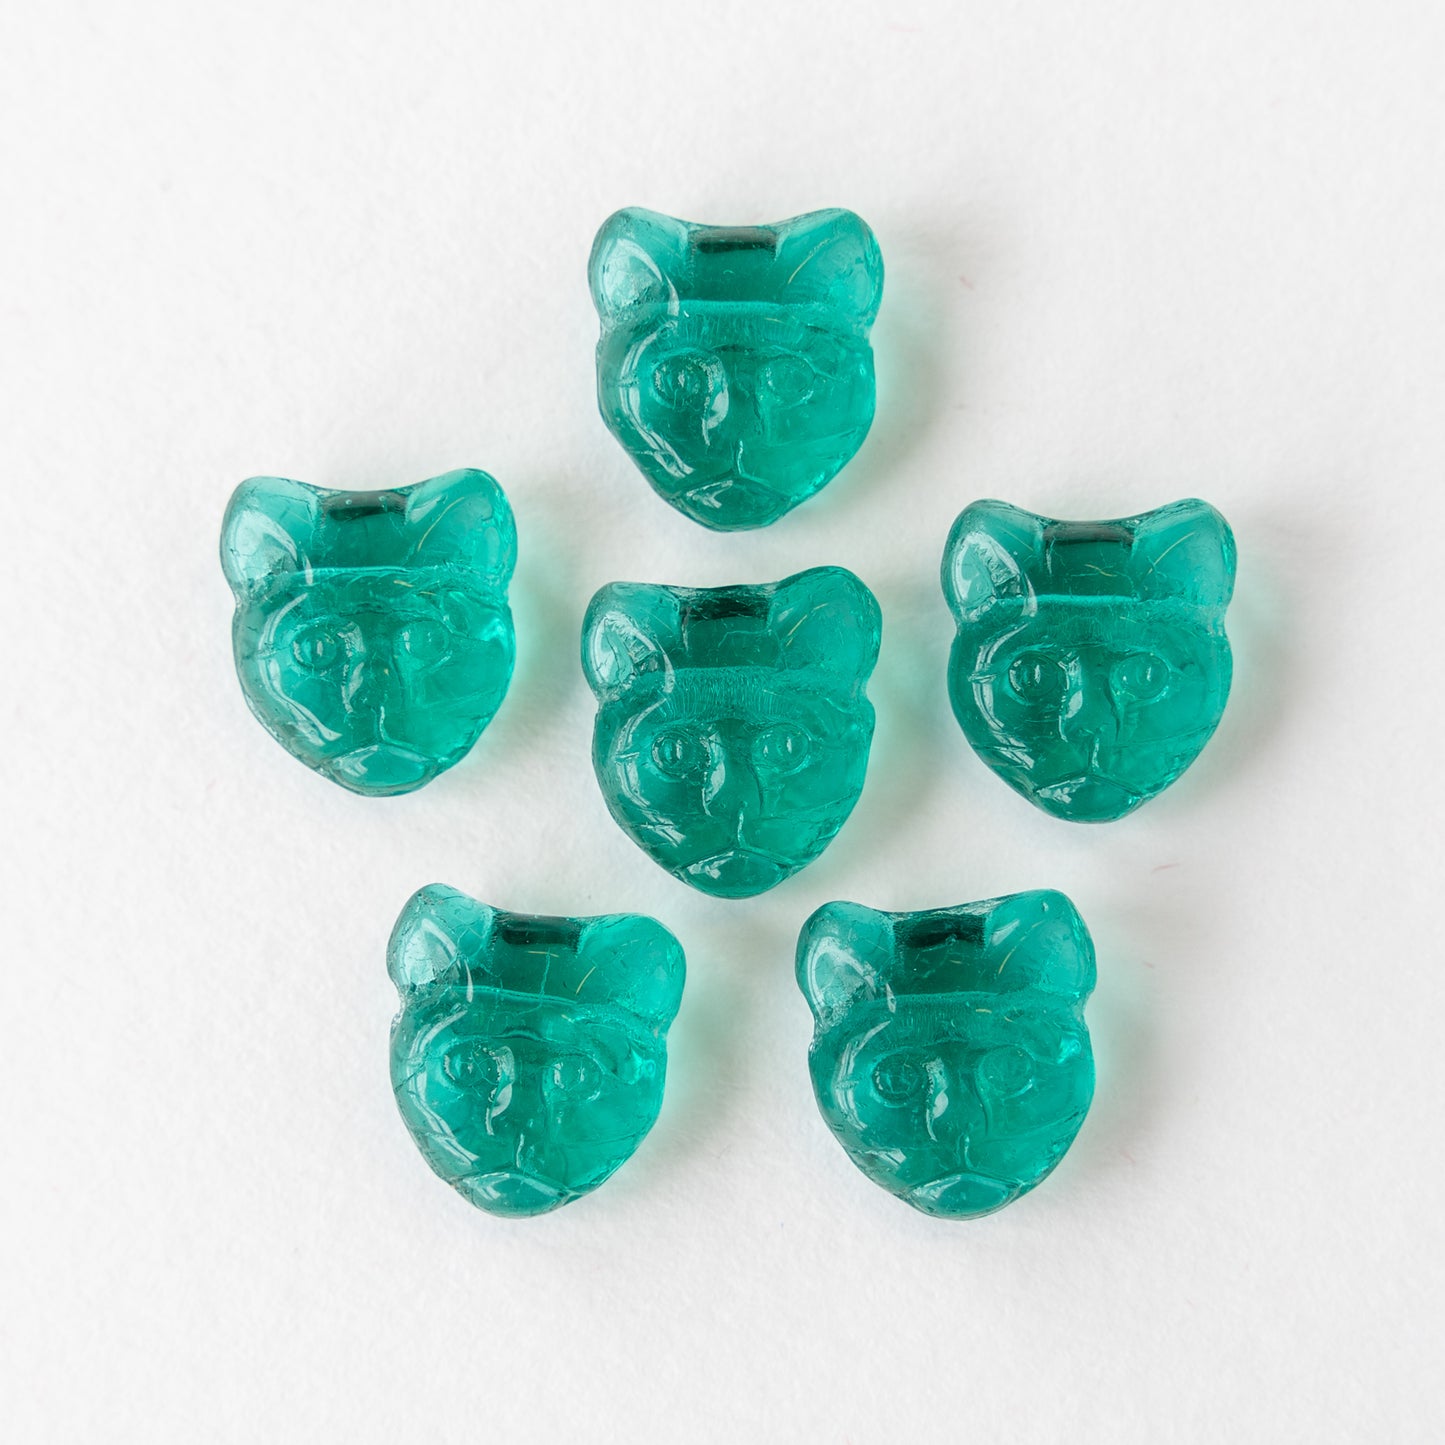 11mm Glass Cat Beads - Transparent Emerald Green - 11 Beads